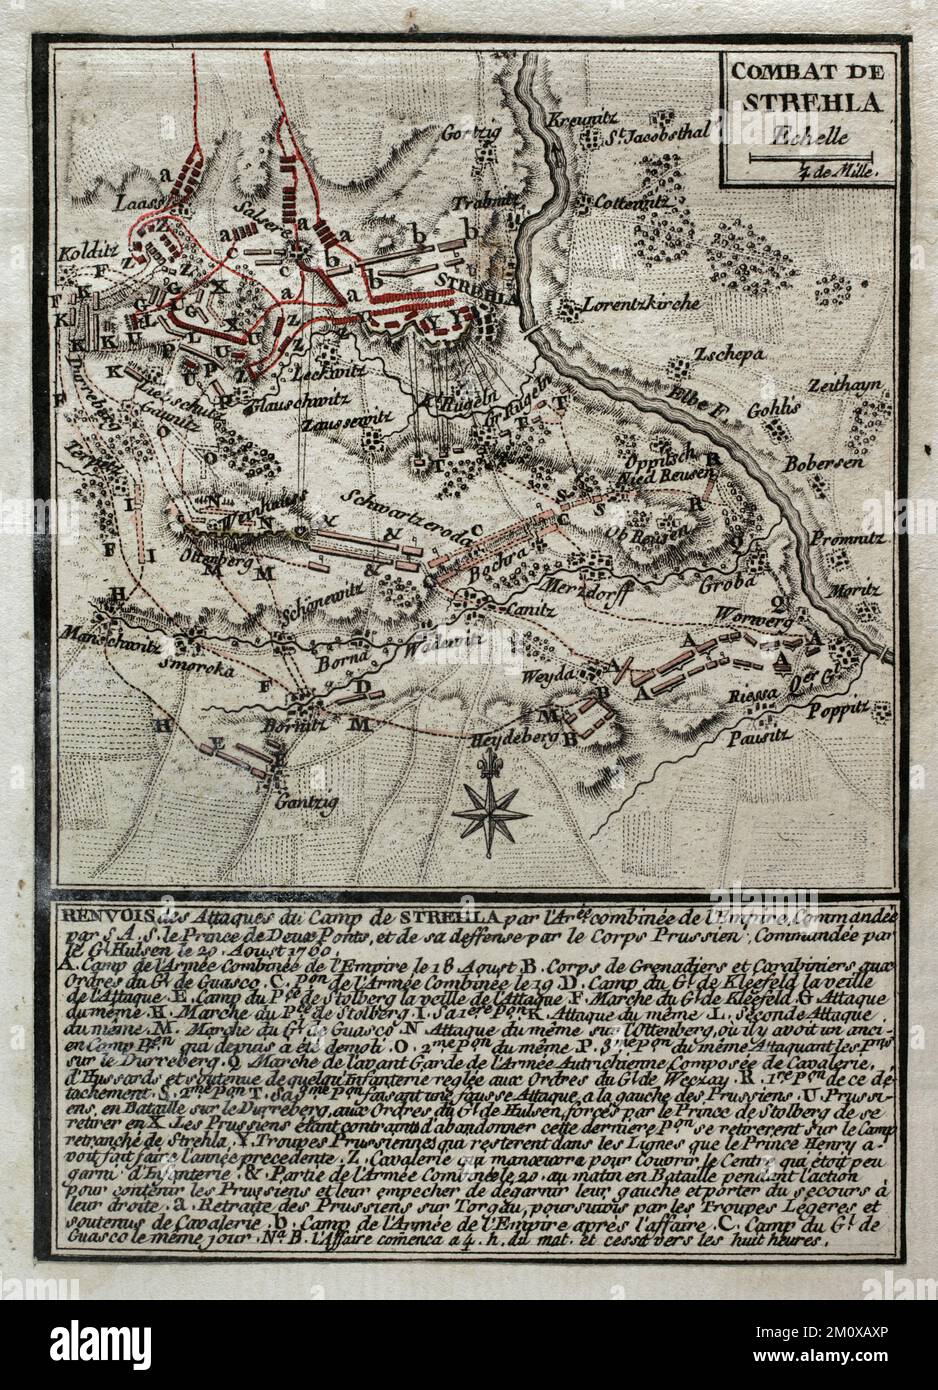 Guerra dei sette anni (1756-1763). Terza guerra silesiana. Mappa della Battaglia di Strehla (20 agosto 1760). Sassonia. L'esercito prussiano, comandato da Johann Dietrich von Hulsen, attaccò le linee austriache difese dalle truppe guidate da Federico Michele (Conte Palatino di Zweibrucken). I prussiani riuscirono a superare gli austriaci. Pubblicato nel 1765 dal cartografo Jean de Beaurain (1696-1771) come illustrazione della sua Grande carta della Germania, con gli eventi che si sono verificati durante la Guerra dei sette anni. Incisione e incisione. Edizione francese, 1765. Biblioteca storica militare di Barcellona (Biblioteca Hist Foto Stock